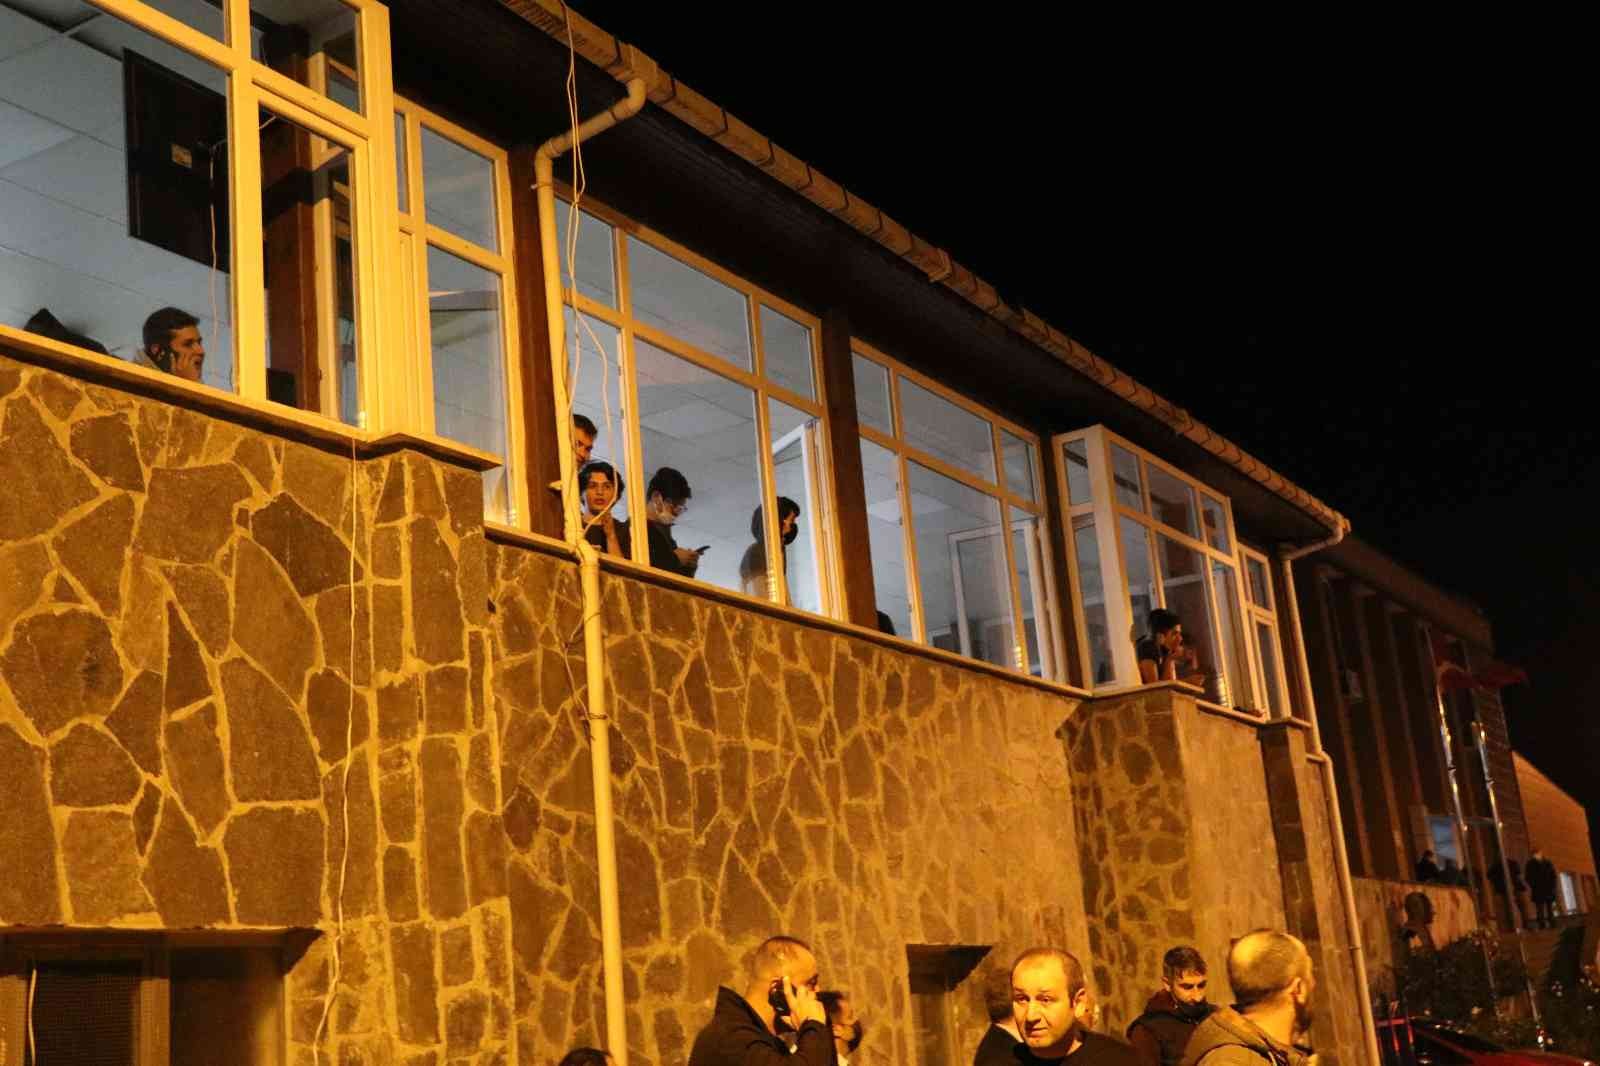 Rize’de çatısı yanan yurttaki öğrenciler diğer yurtlara yerleştirildi #rize